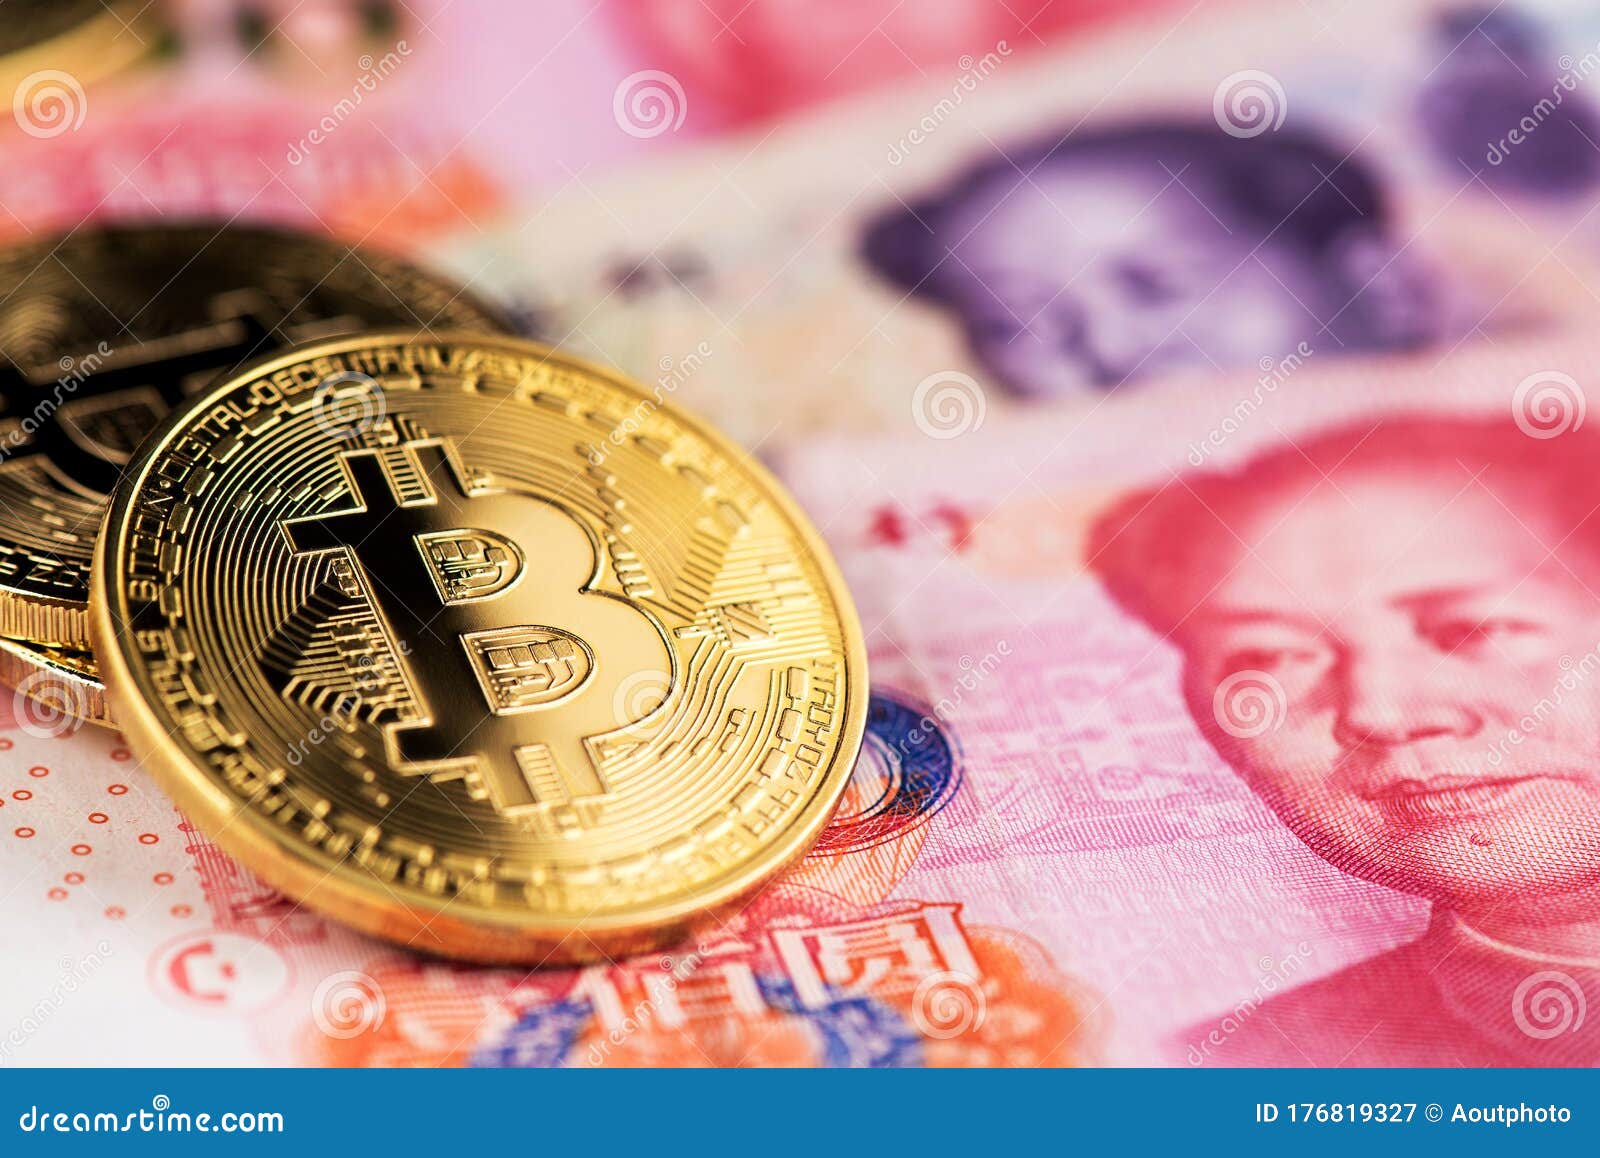 yuan bitcoin tranzacții live bitcoin